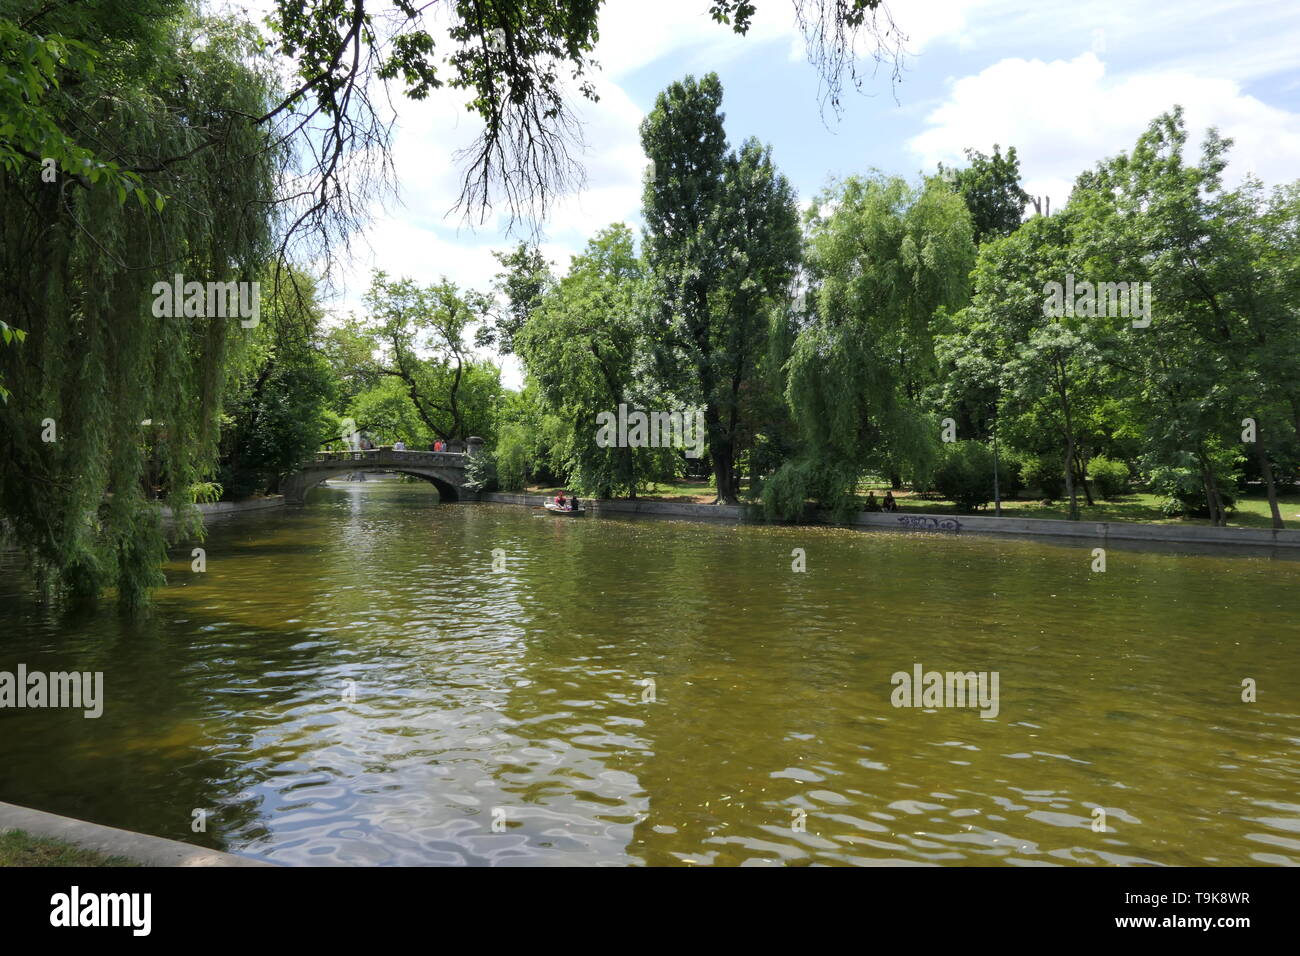 Der Cismigiu Gärten oder dem Cismigiu Park sind ein öffentlicher Park in der Nähe des Zentrums von Bukarest, Rumänien Stockfoto